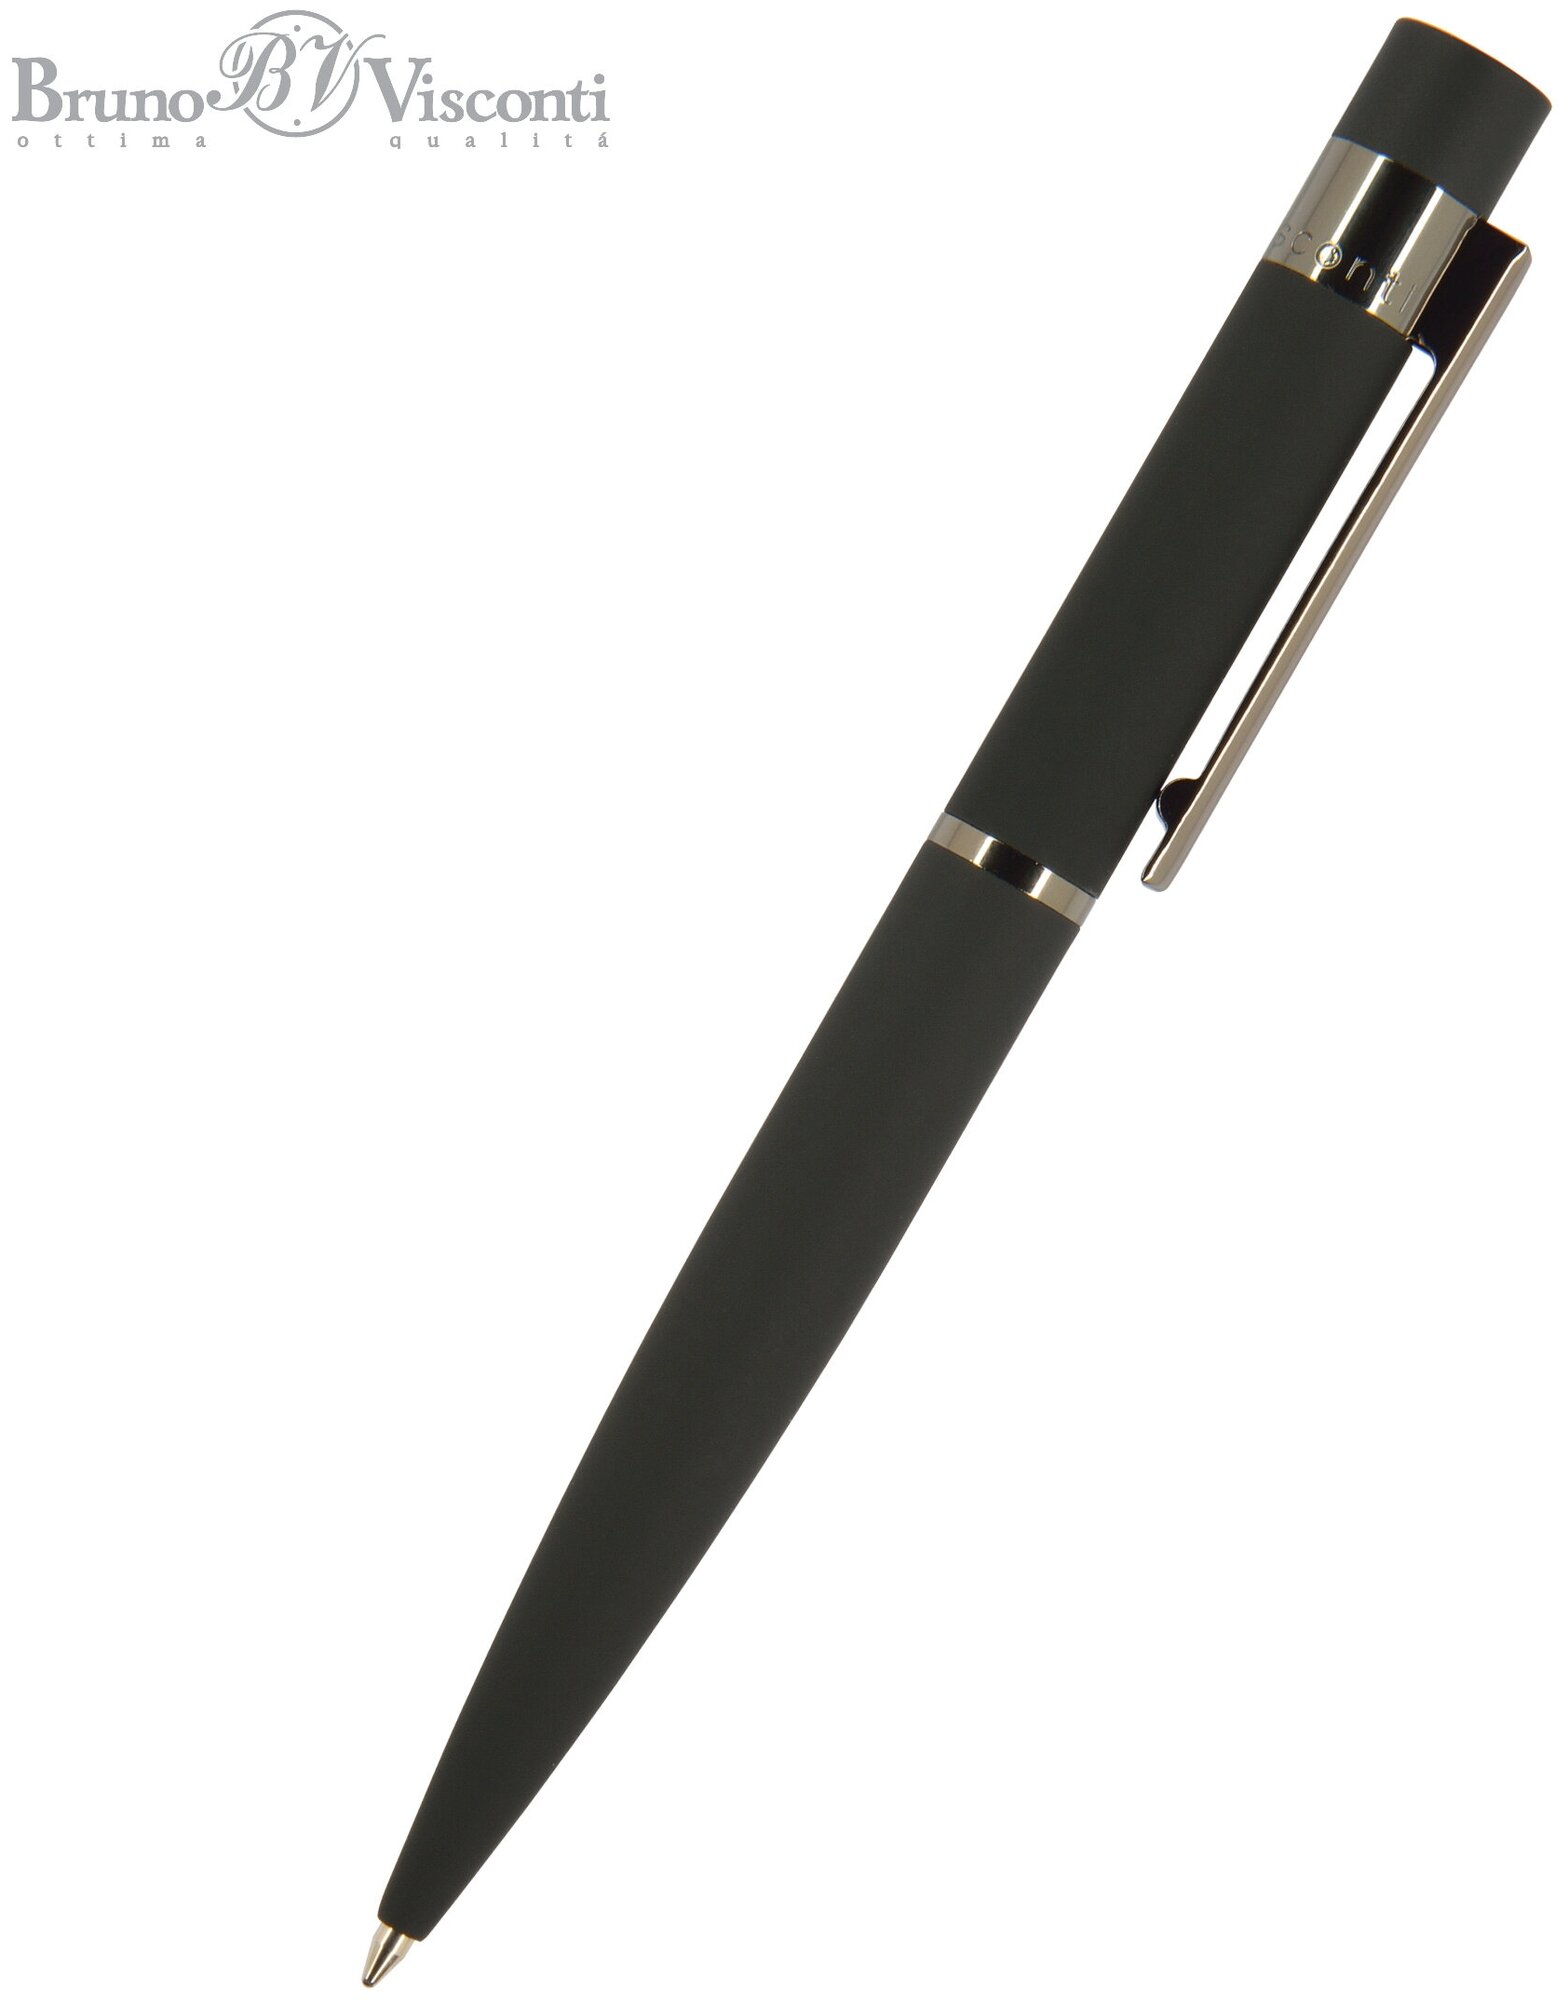 Ручка BrunoVisconti, шариковая автоматическая, 1 мм, синяя, VERONA (черный металлический корпус), Арт. 20-0216